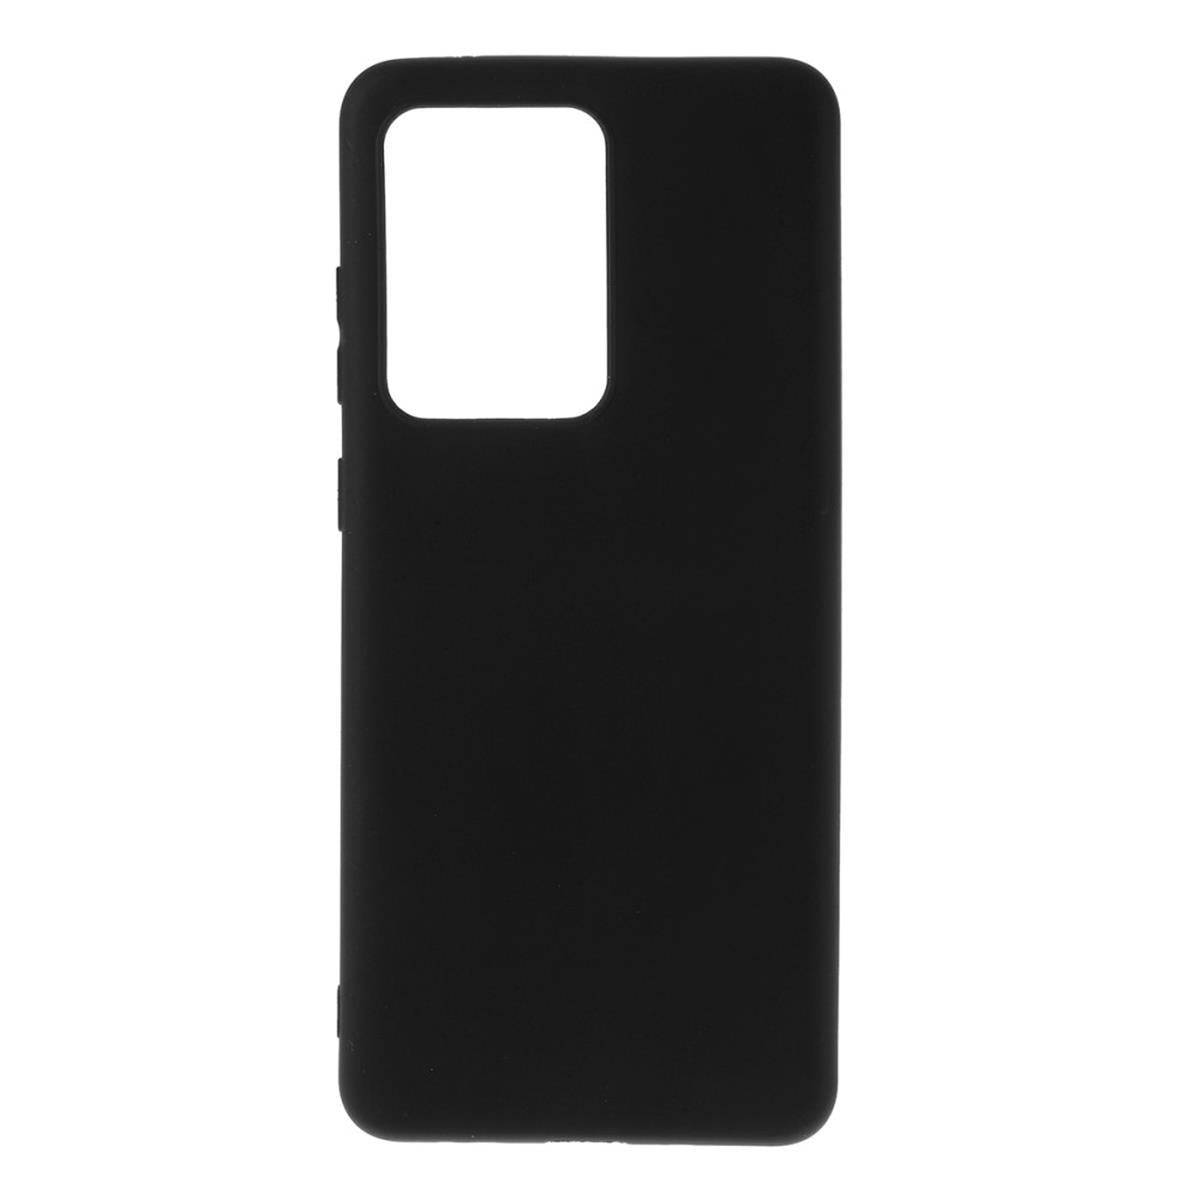 Hülle für Xiaomi Redmi 10/10 Prime Handyhülle Silikon Case Cover Matt Schwarz